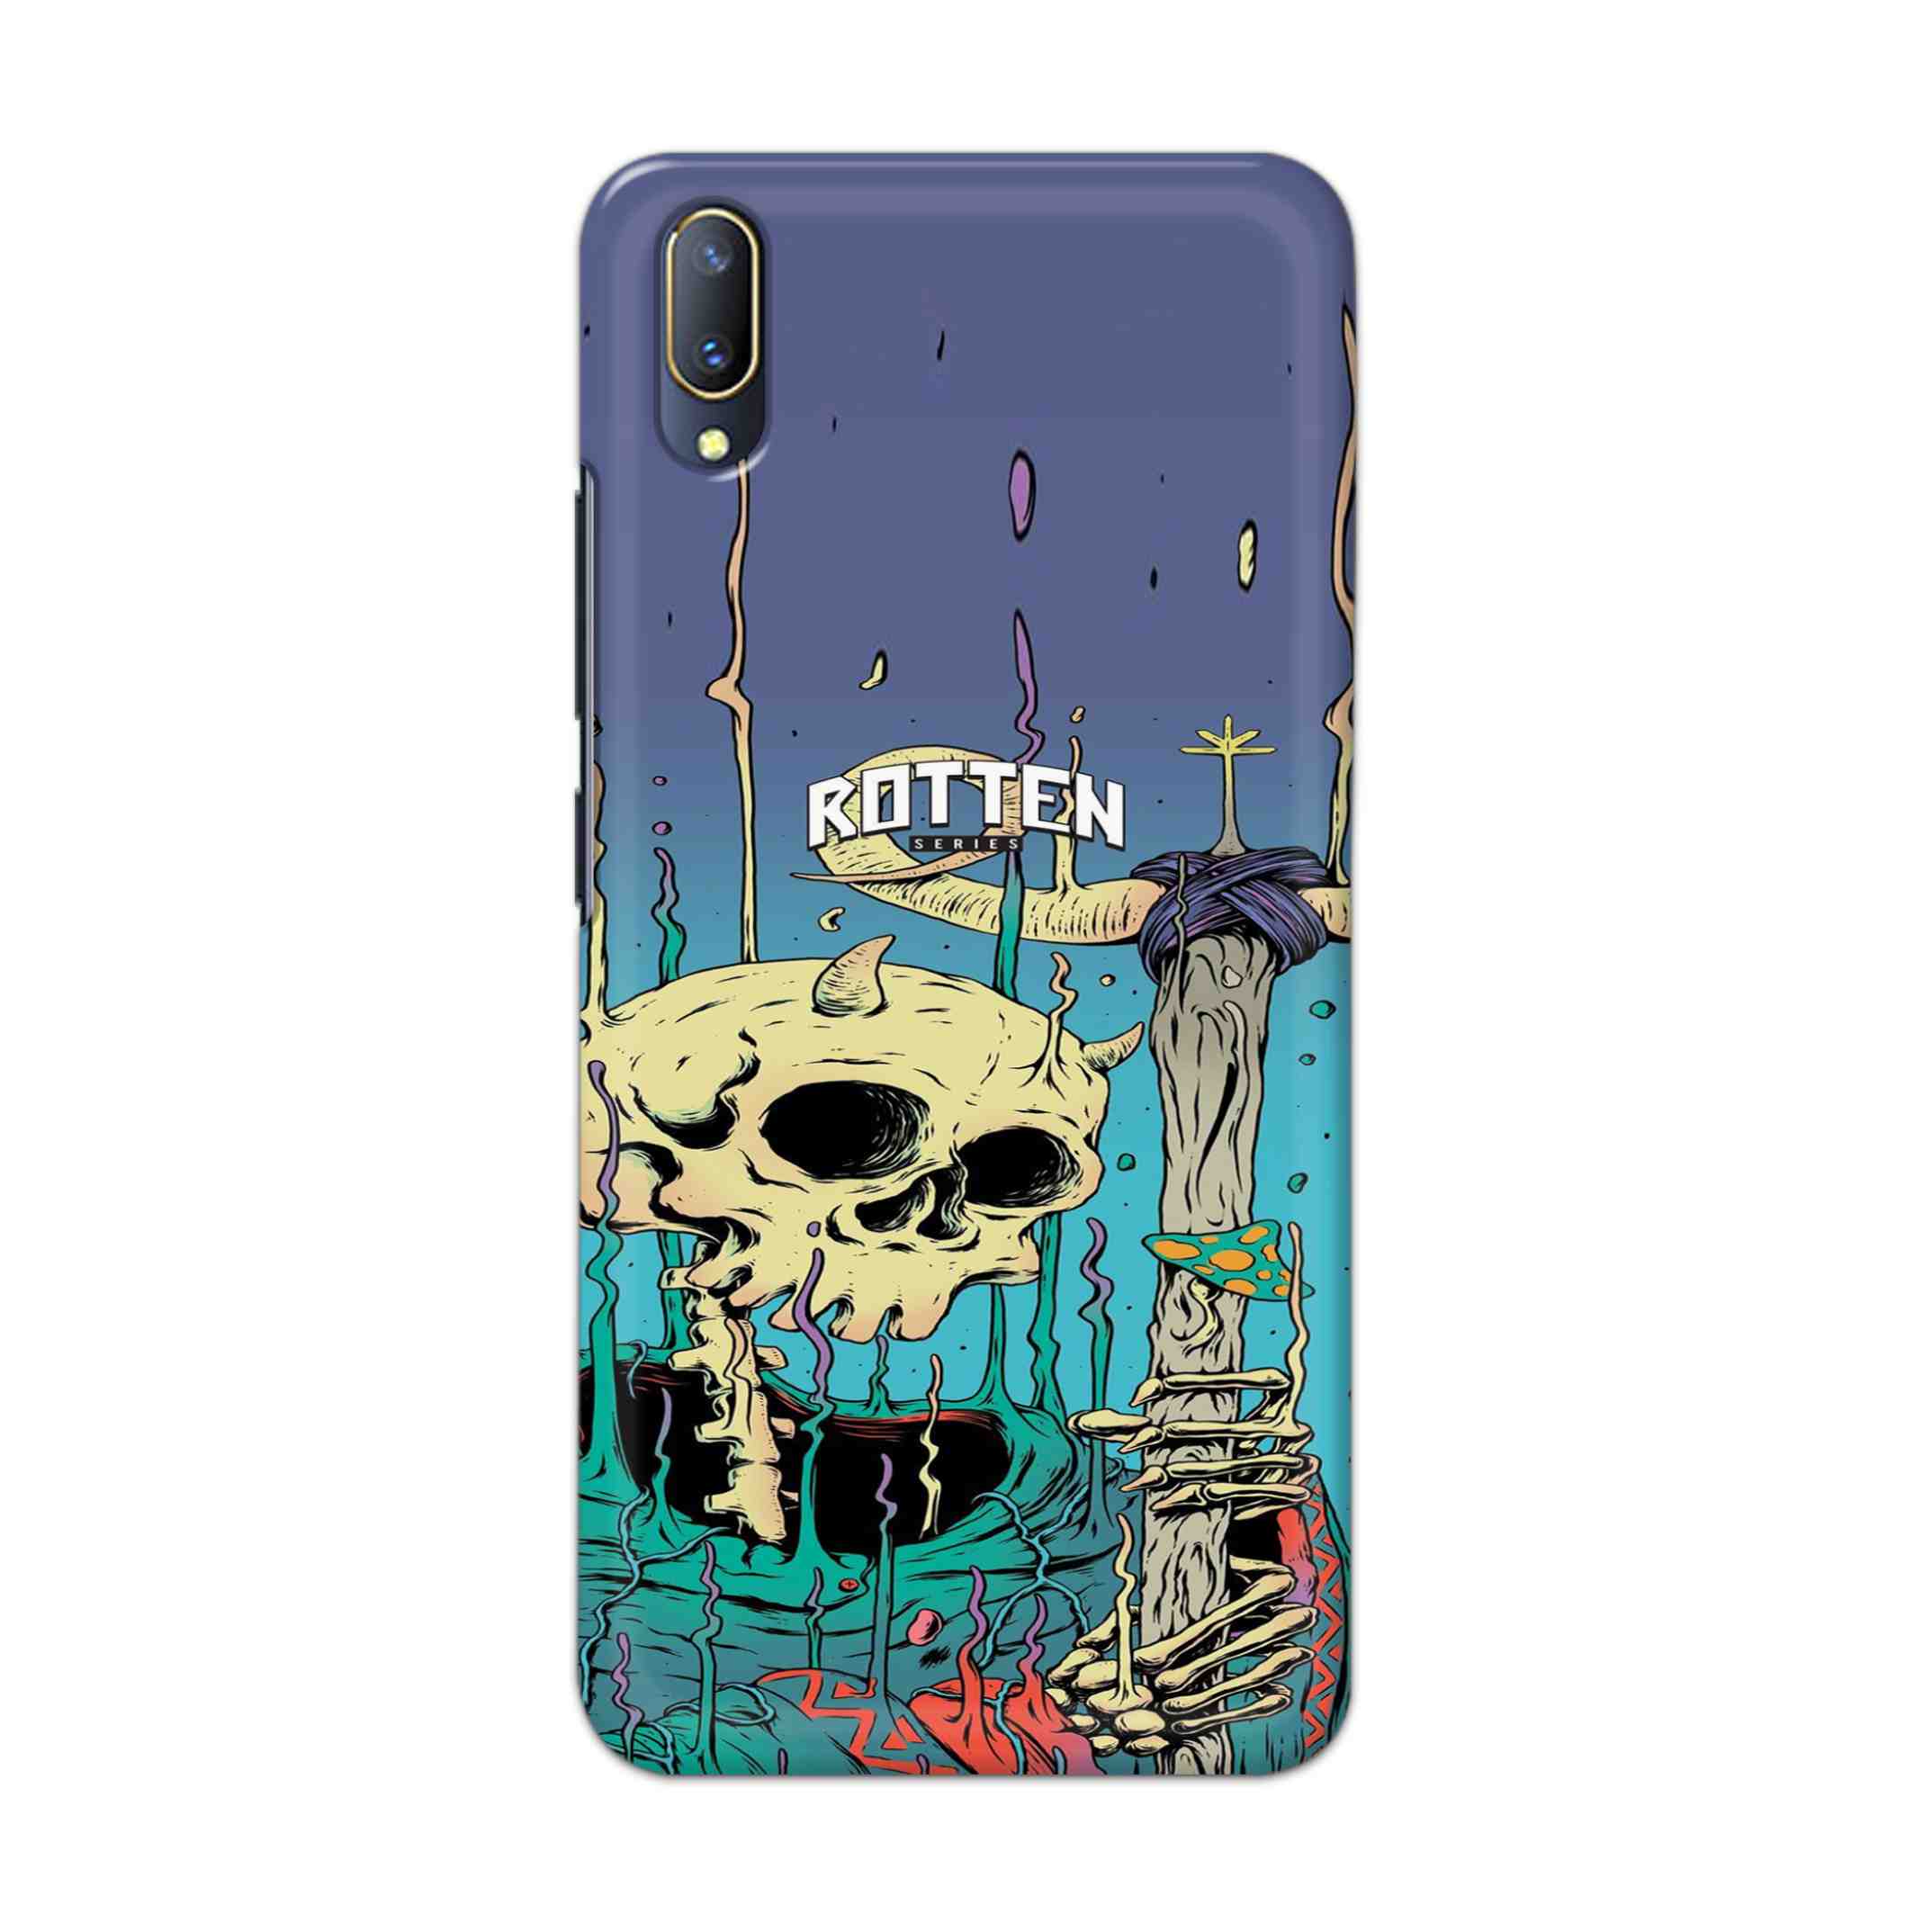 Buy Skull Hard Back Mobile Phone Case Cover For V11 PRO Online